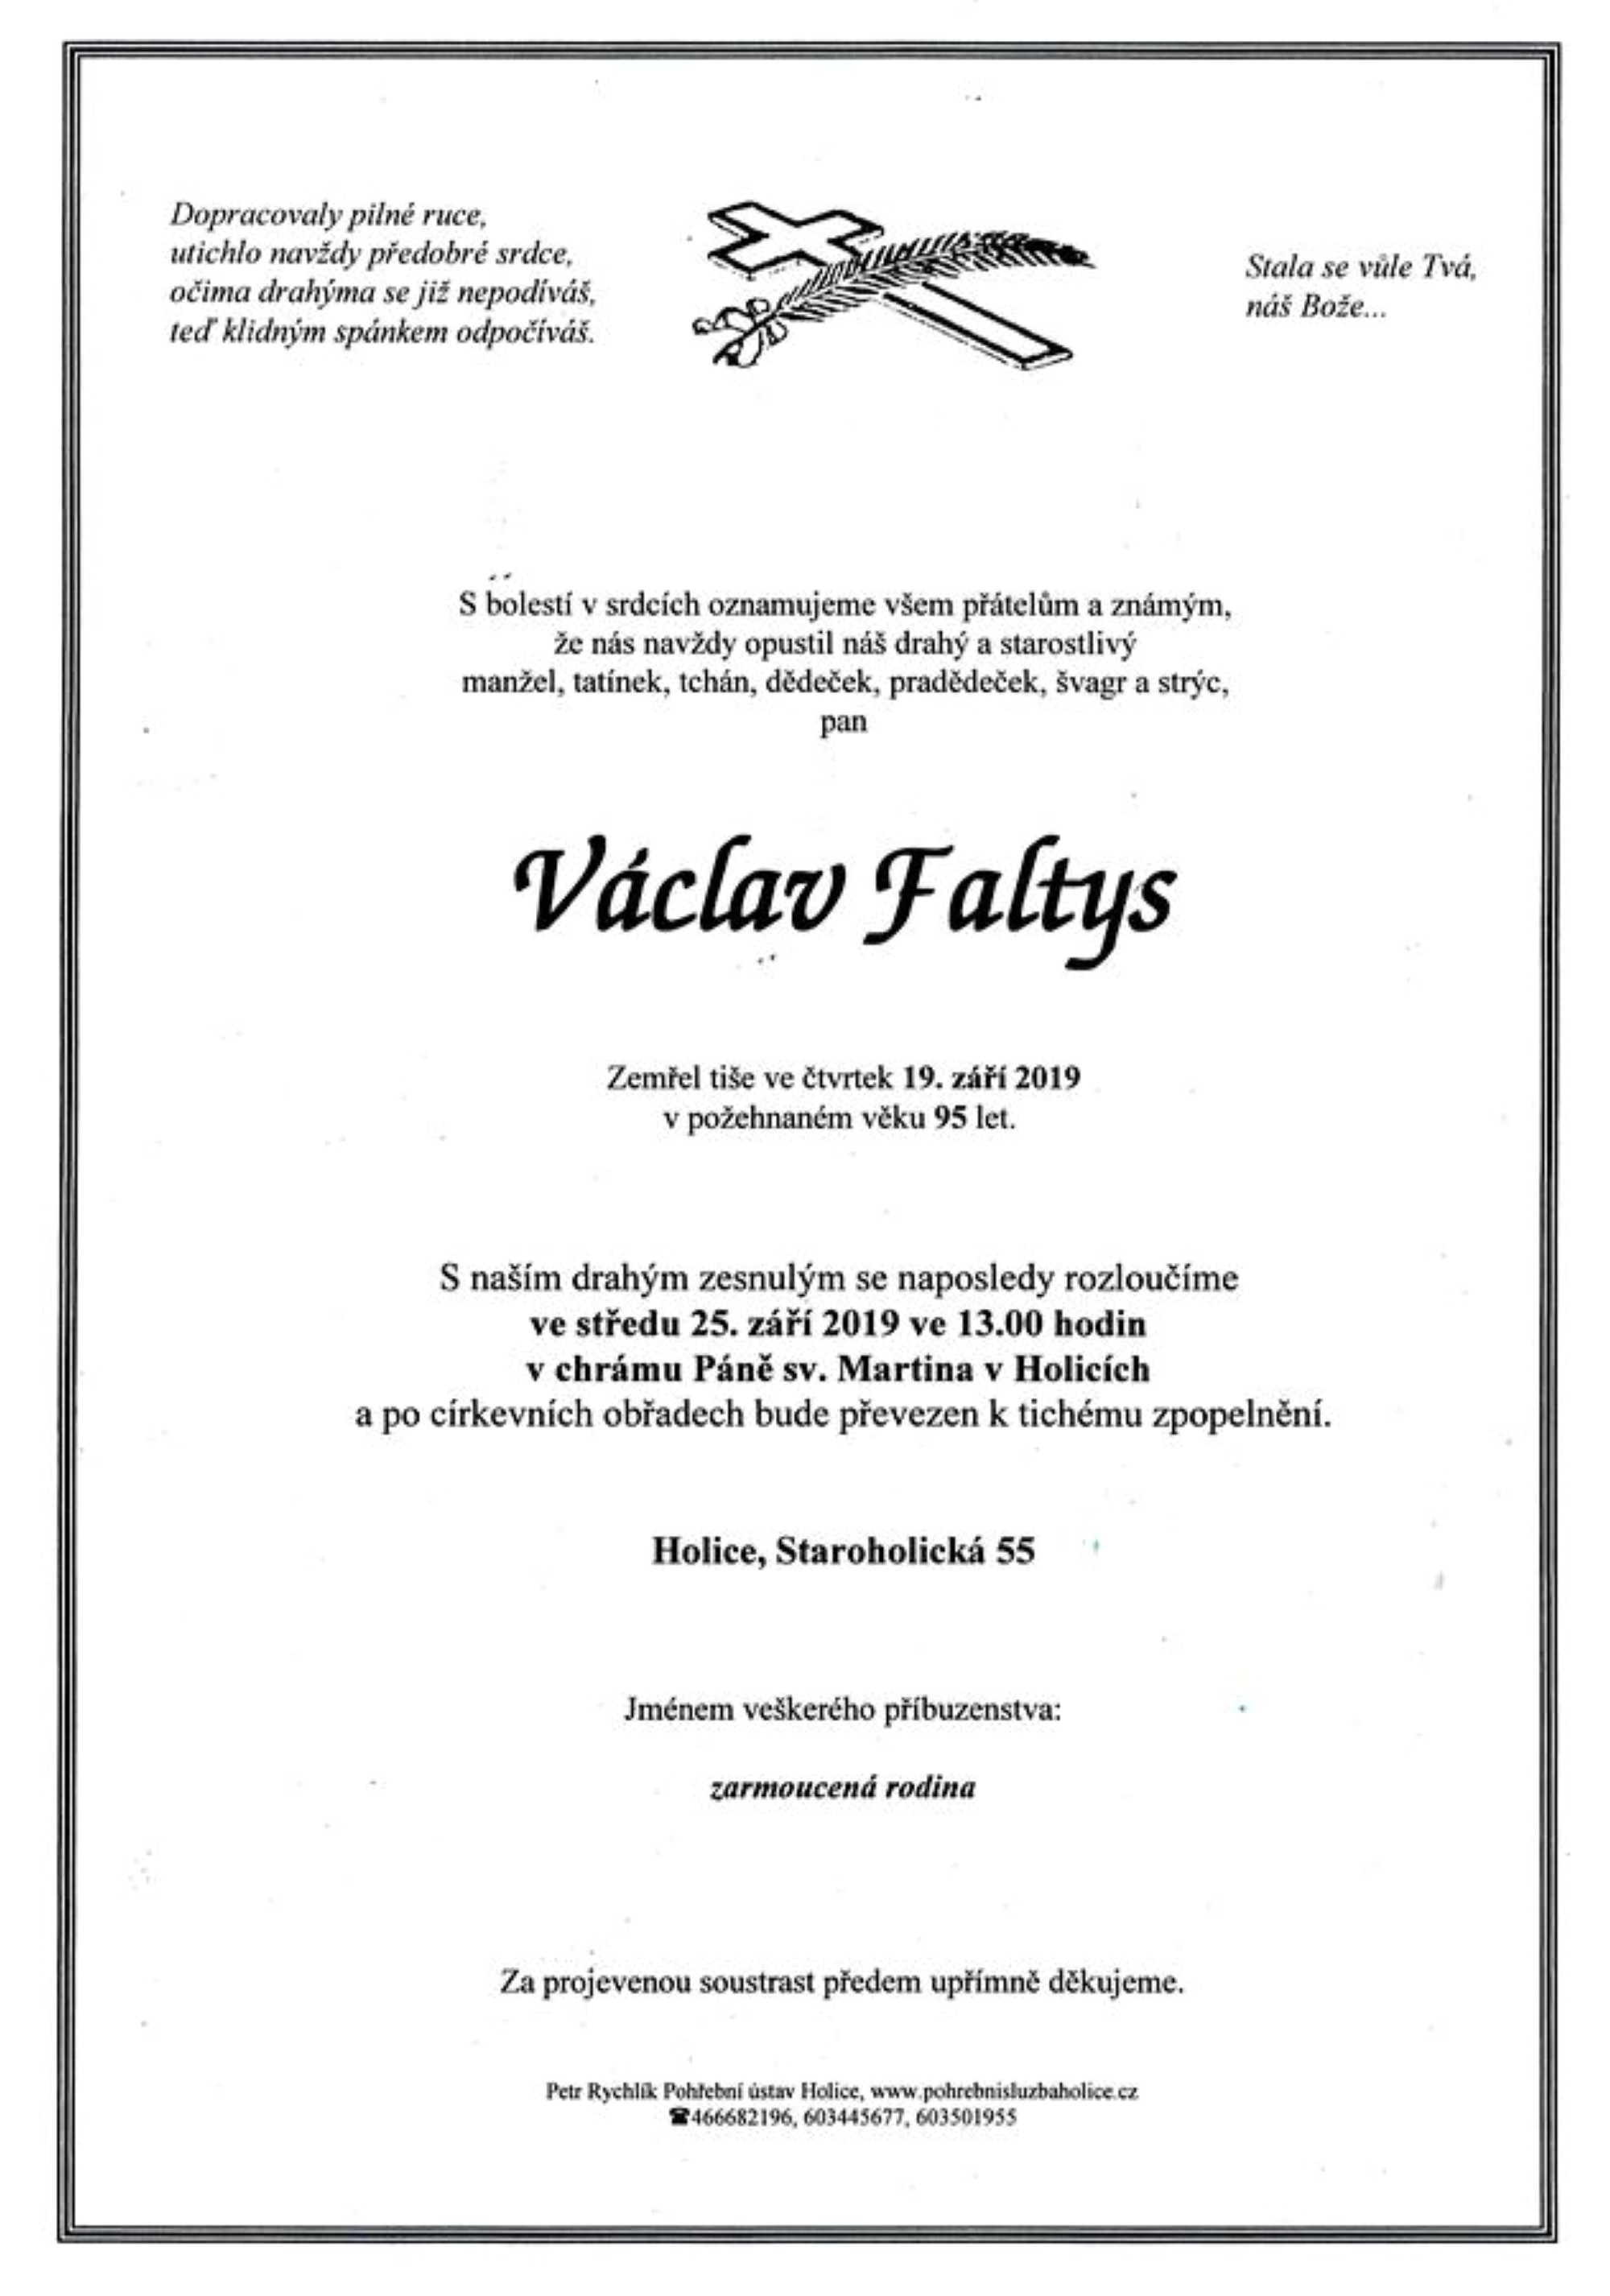 Václav Faltys